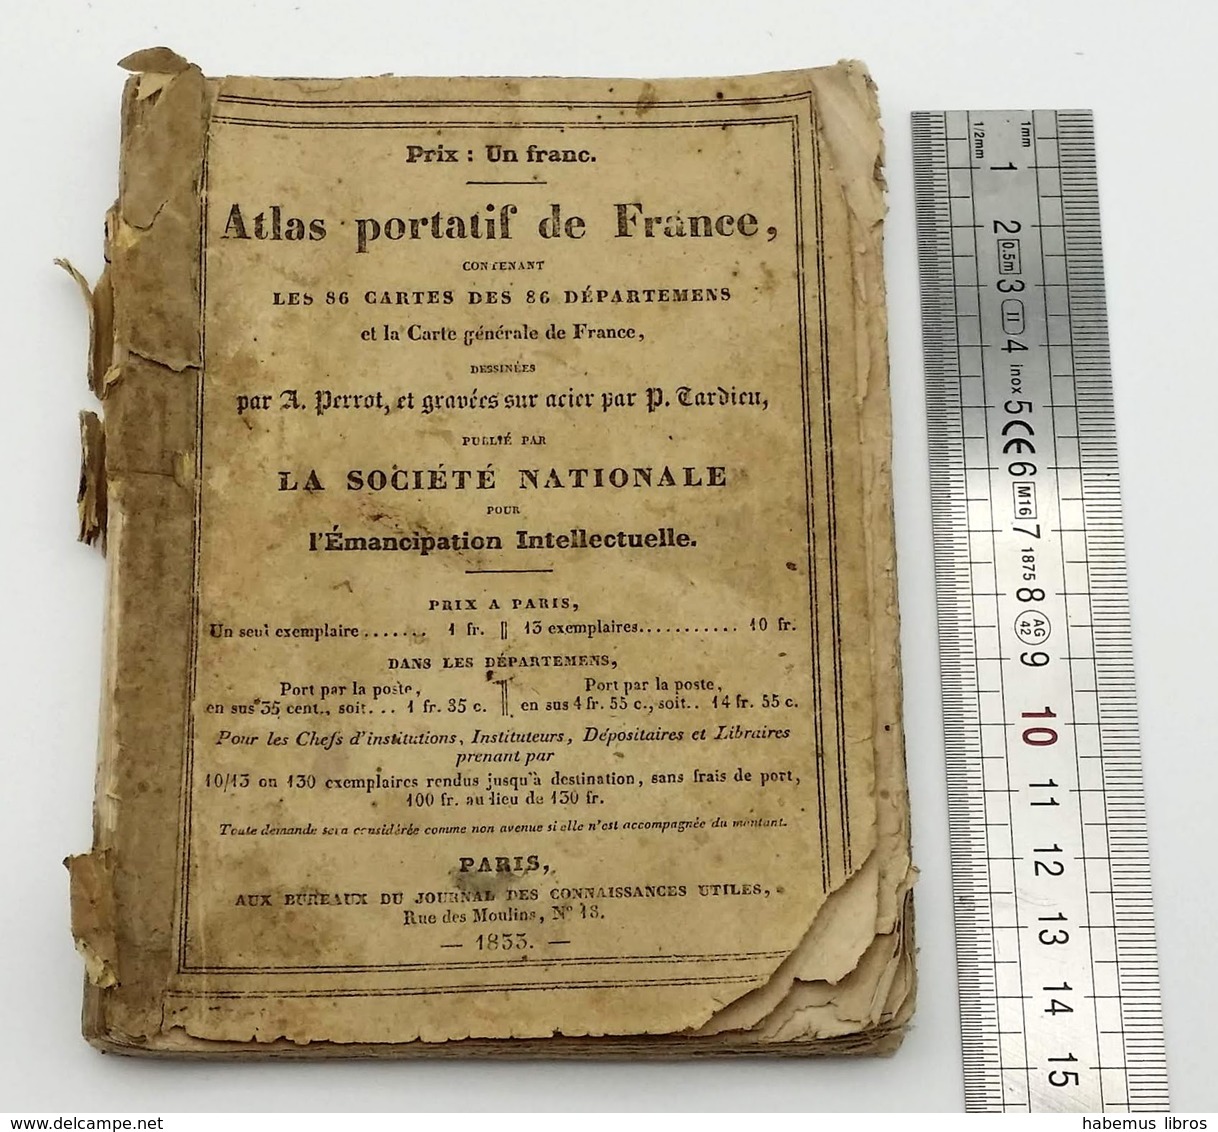 Atlas Portatif De France, Contenant Les 86 Cartes... - Paris : Aux Bureaux Du Journal Des Connaissances Utiles, 1833 - 1901-1940